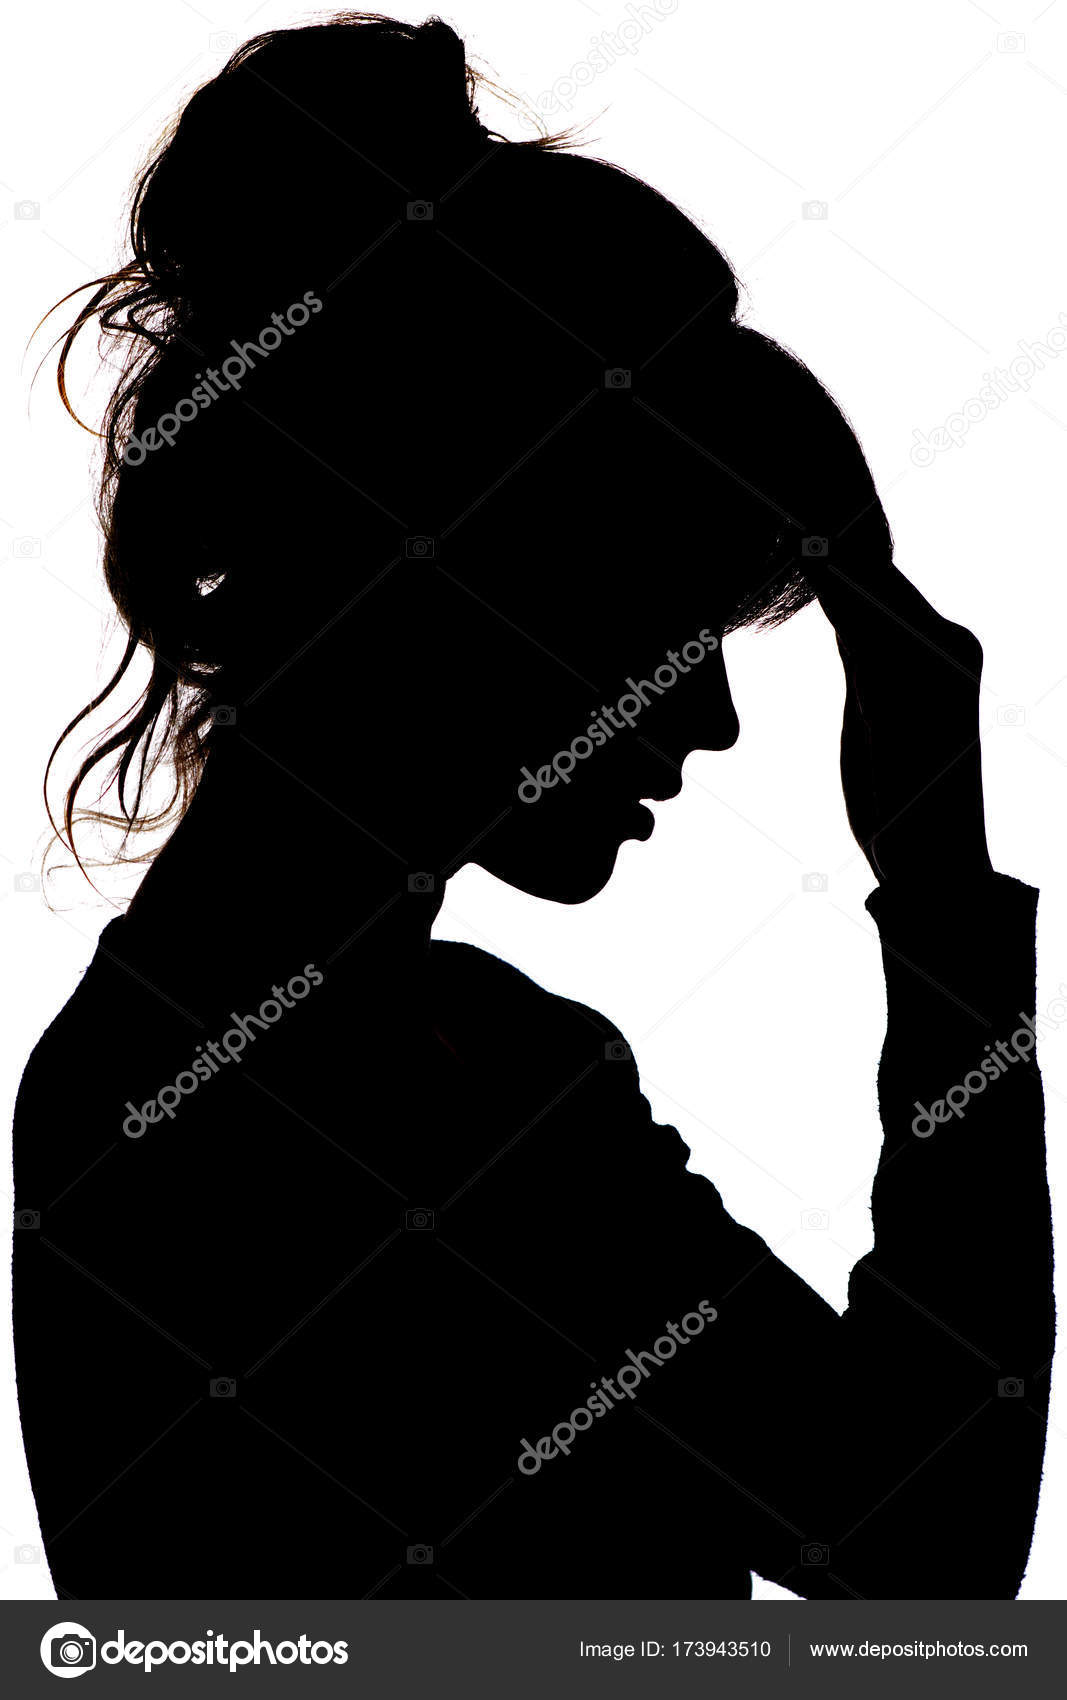 Silhueta da menina rosto perfil de uma triste irreconhecível, mulher em  depressão colocar a mão na testa fotos, imagens de © fantom_rd #168699036